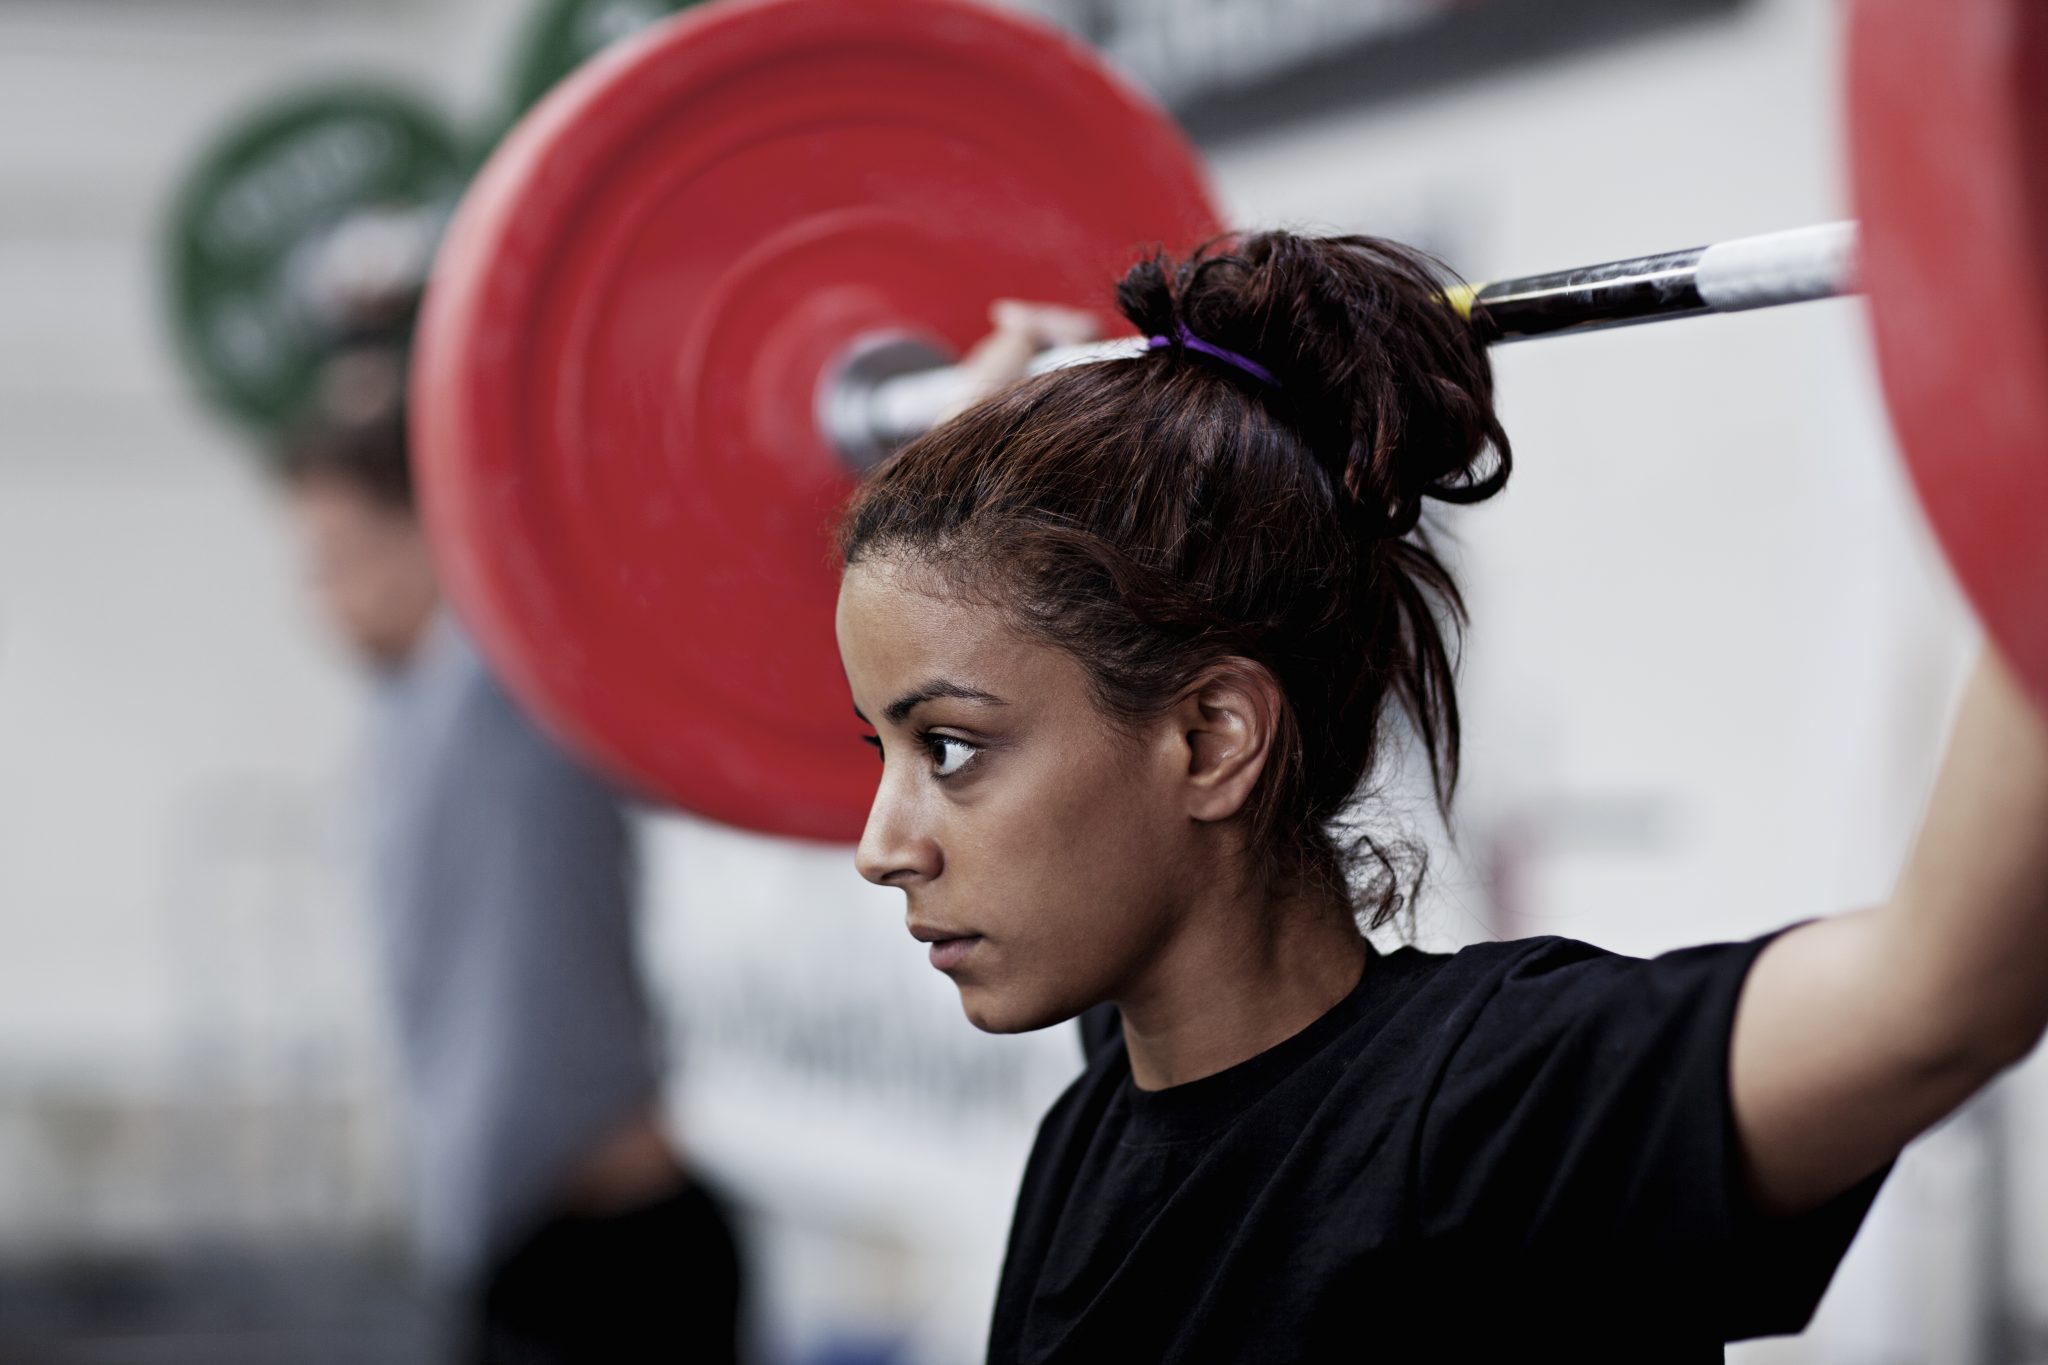 Does Lifting Make Women Bulky? - Jeremy Scott Fitness